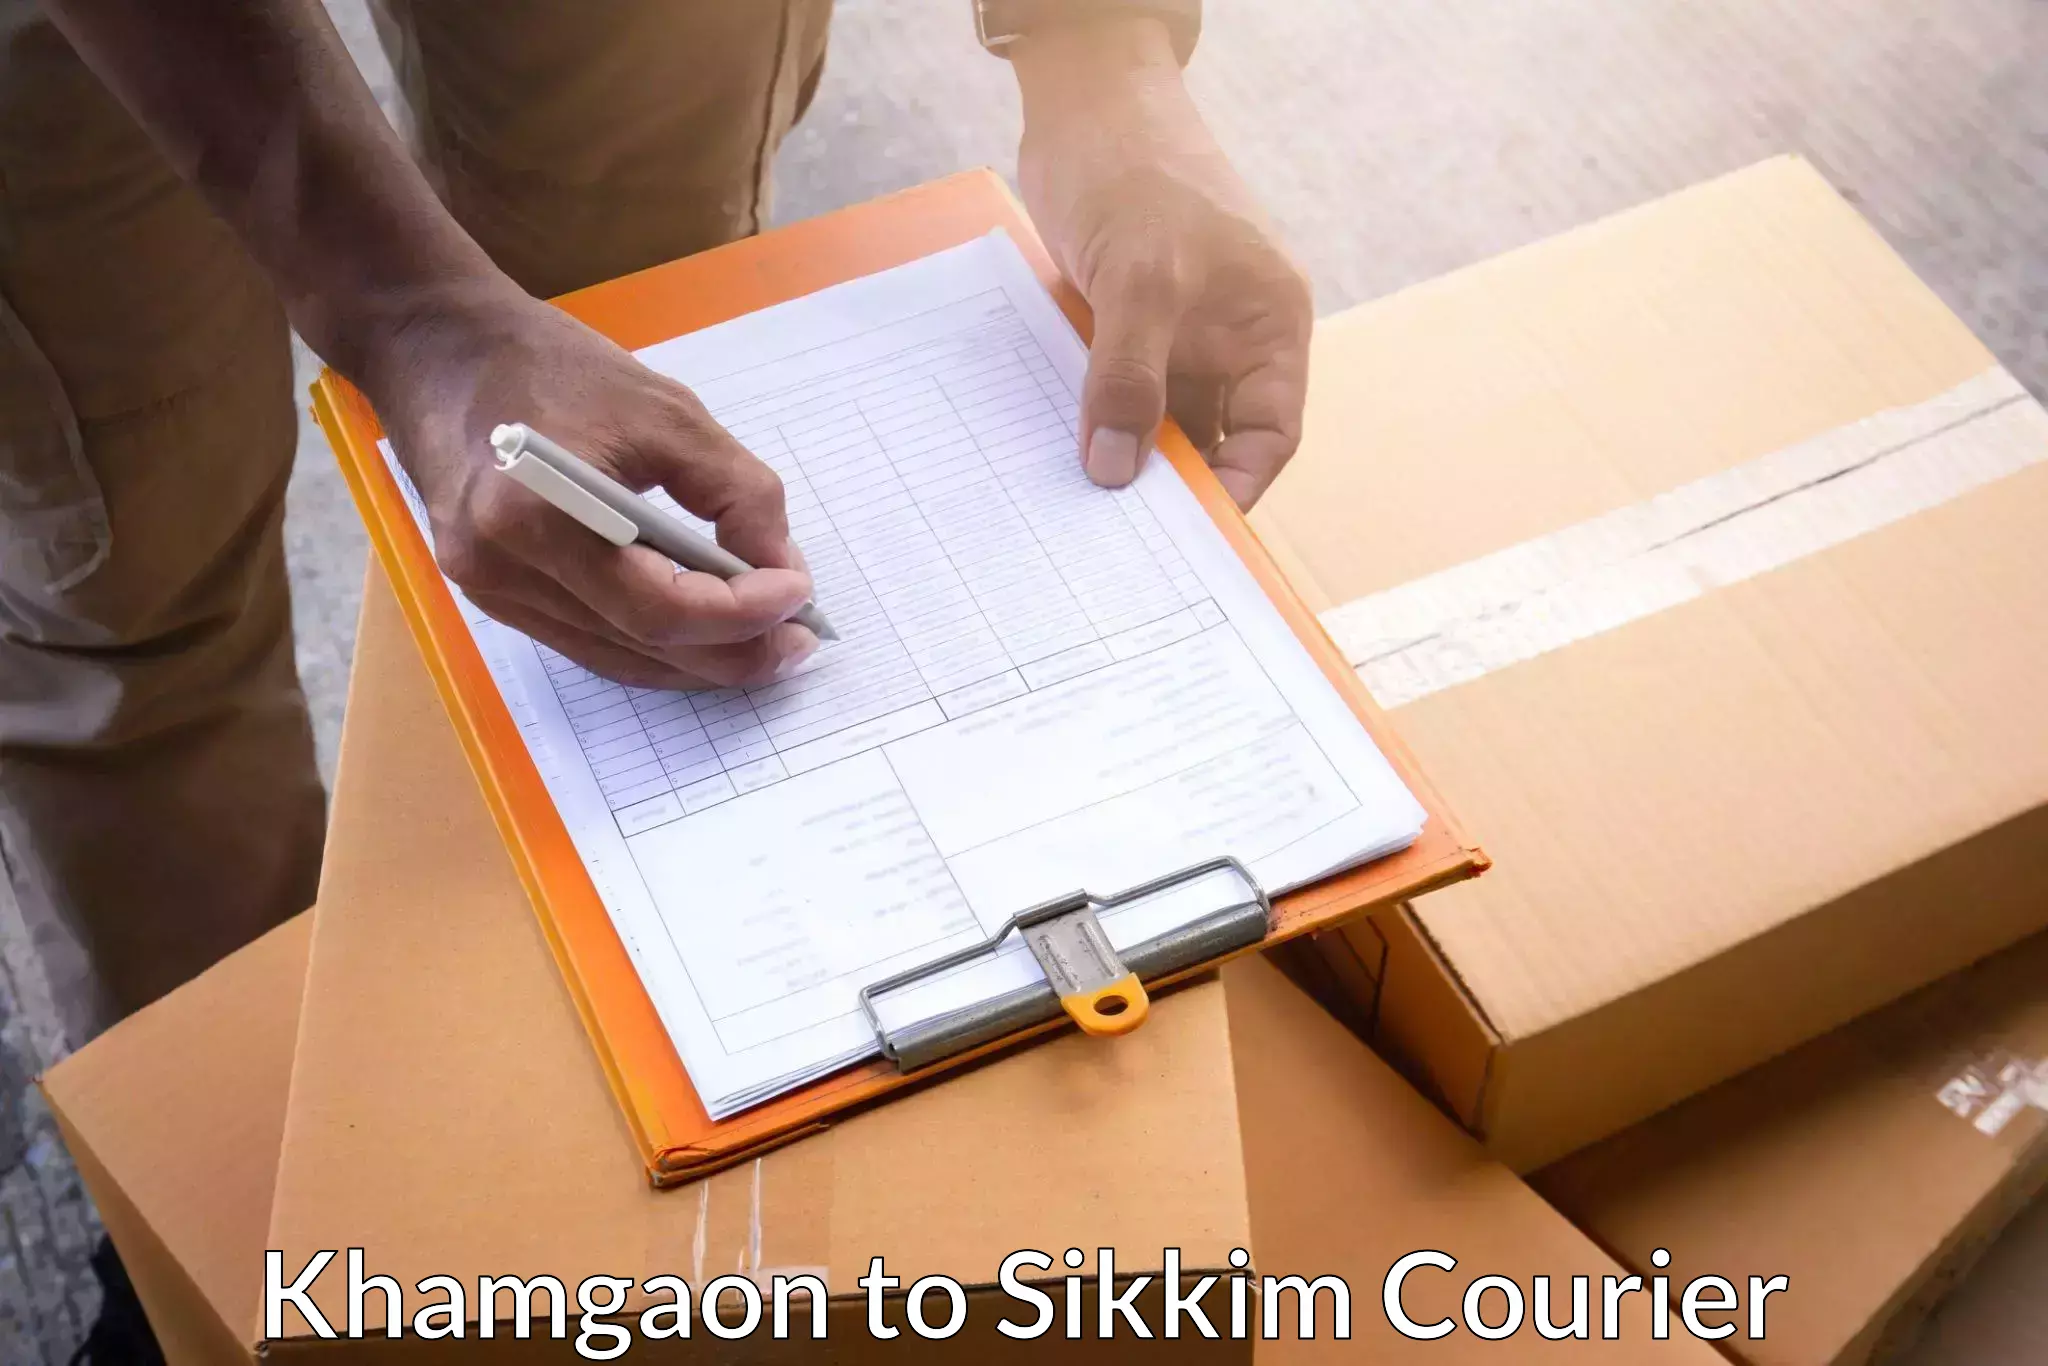 24-hour courier service Khamgaon to Mangan